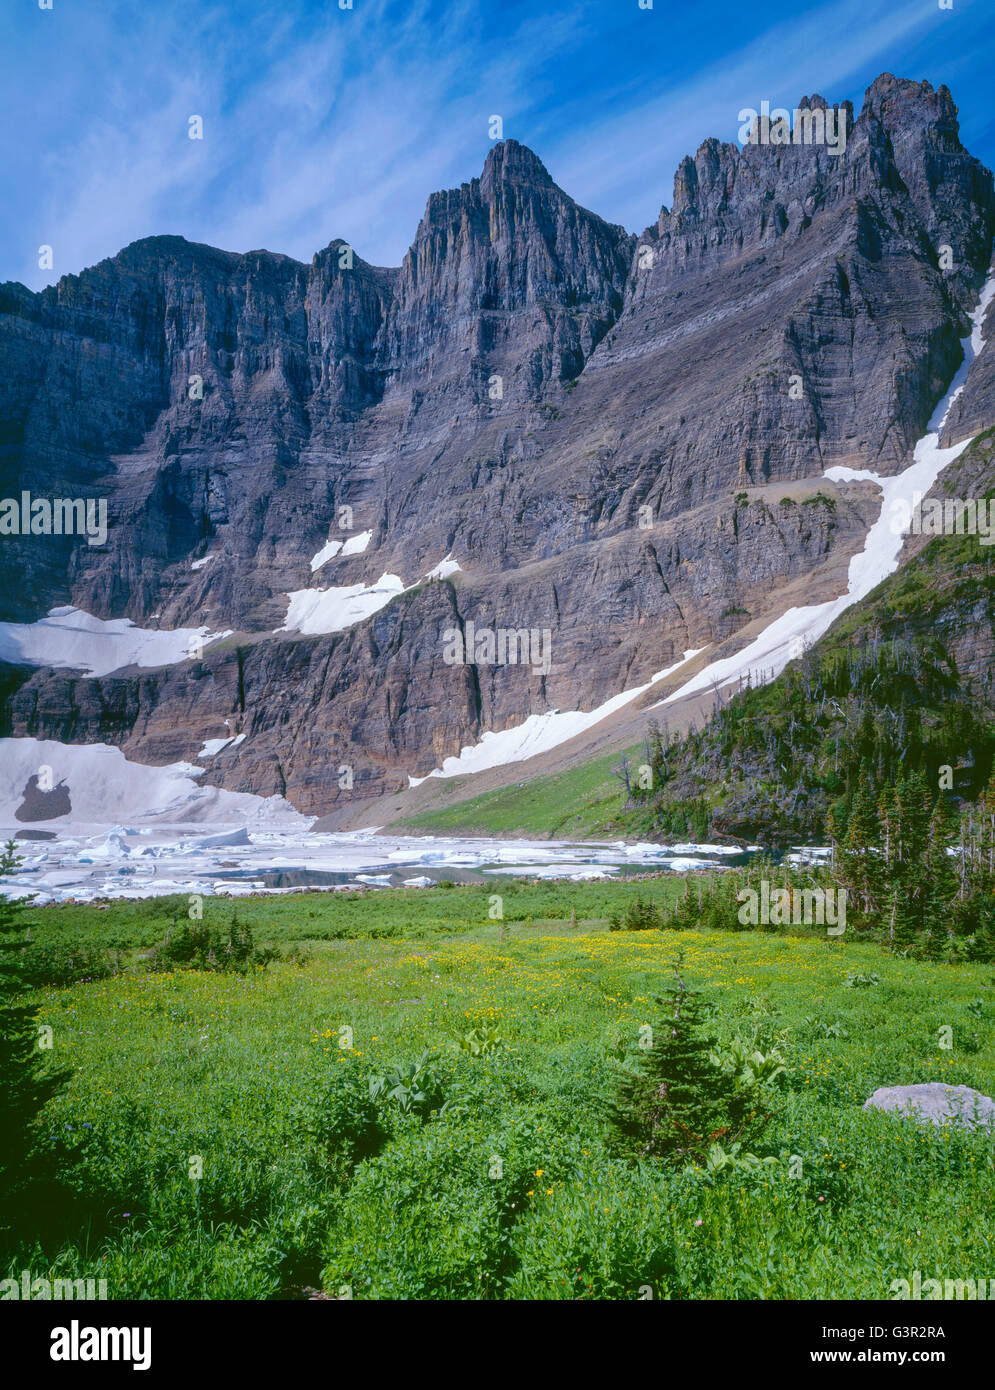 USA, Montana, le parc national des Glaciers, prairie de fleurs d'arnica jaune près de la rive du lac Iceberg sous le mur de lagopède. Banque D'Images